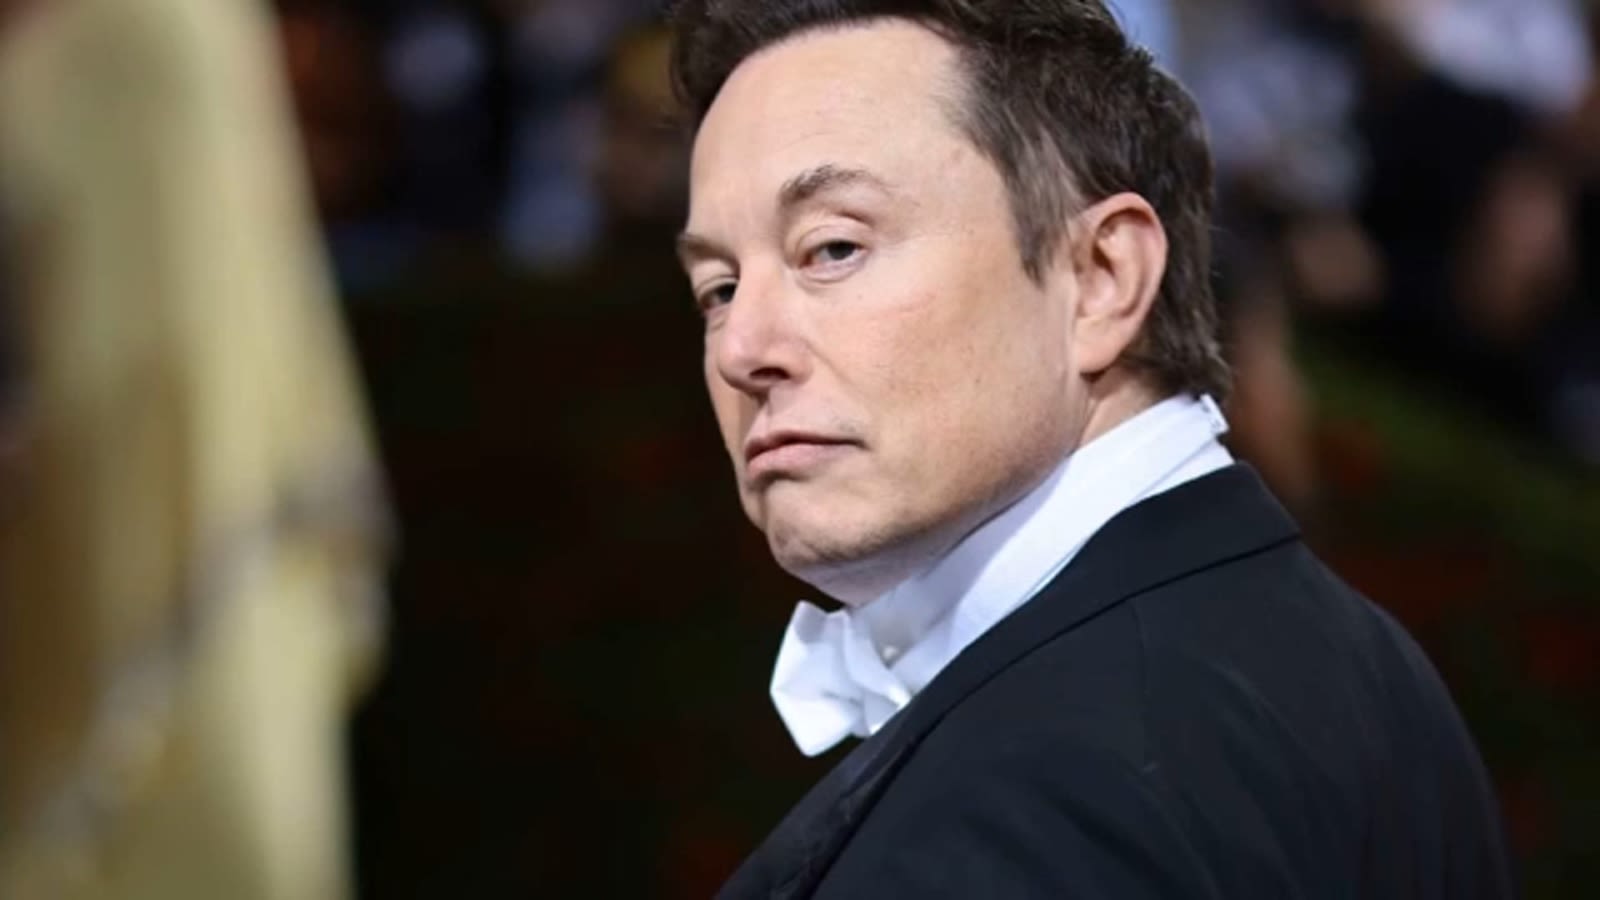 Elon Musk accused of improperly selling $7.5 billion in Tesla stock before weak sales report